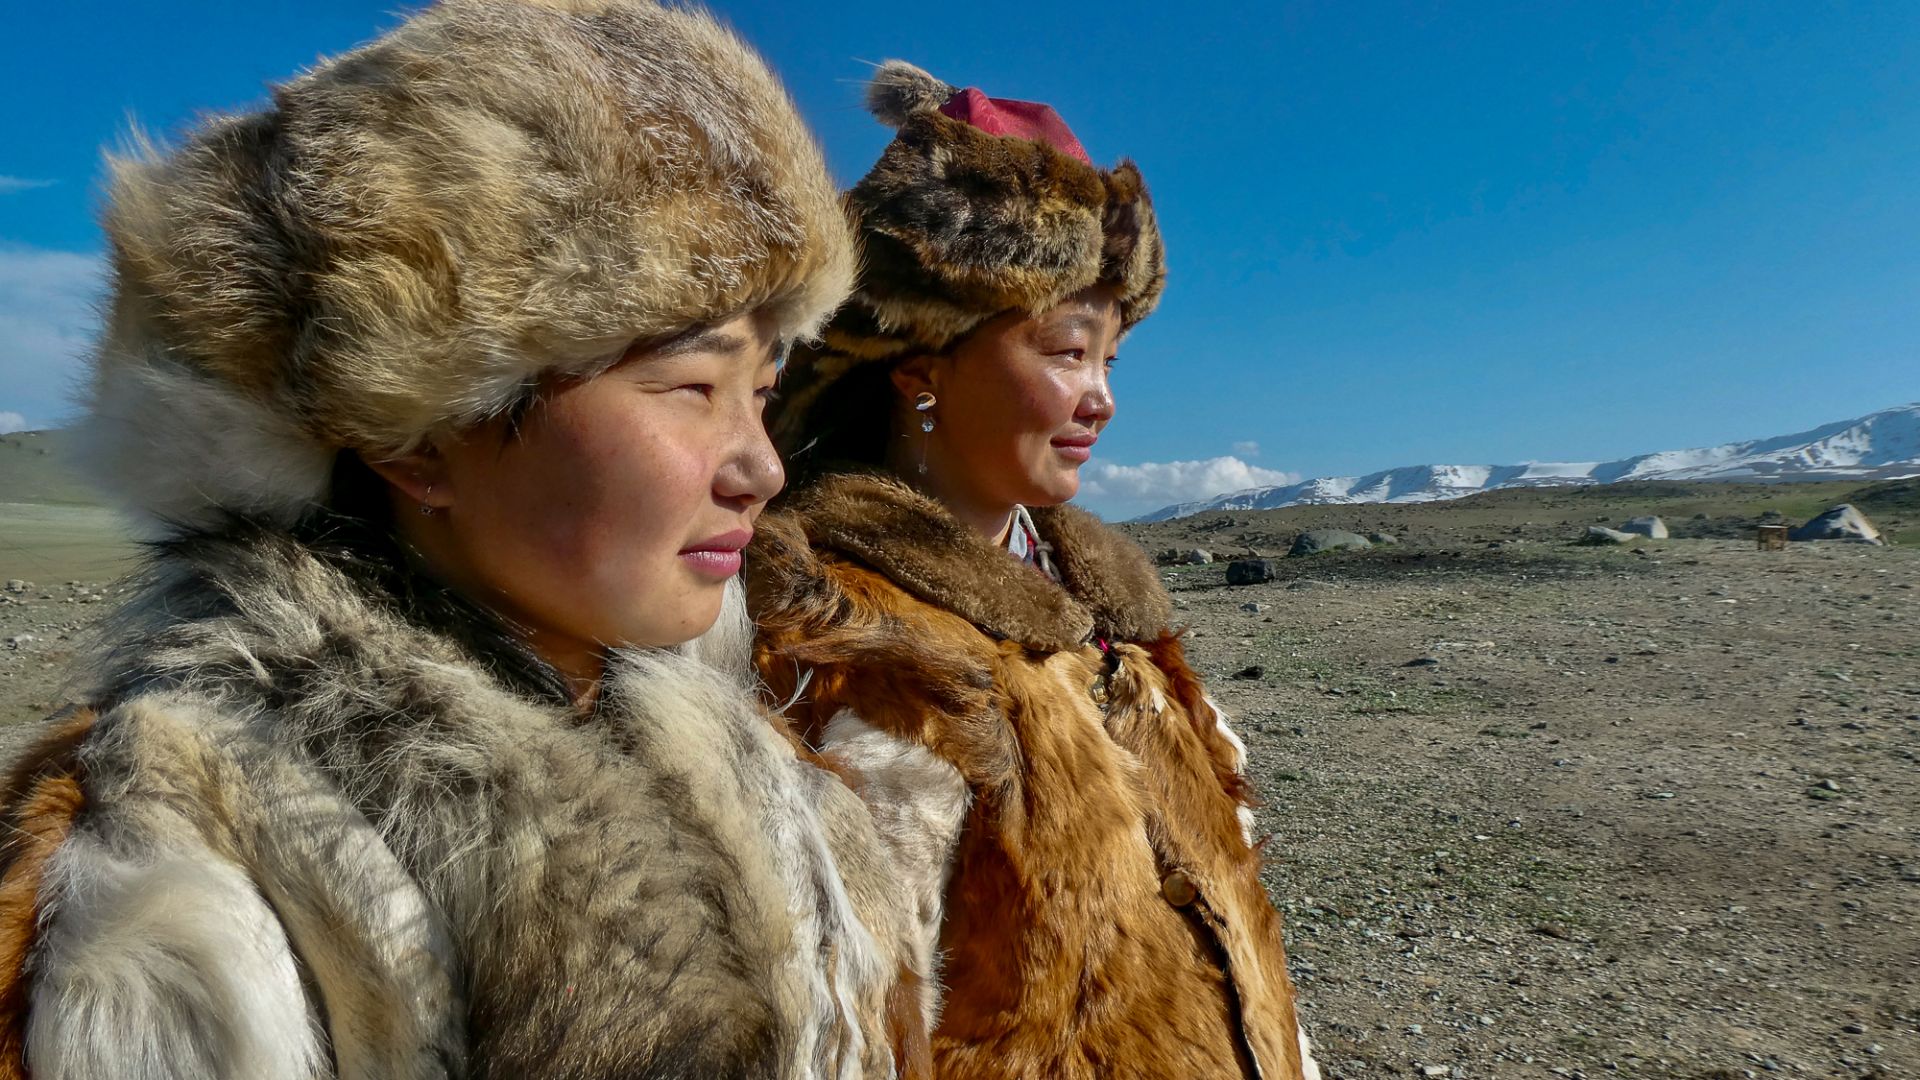 Kazakh girls in Mongolia